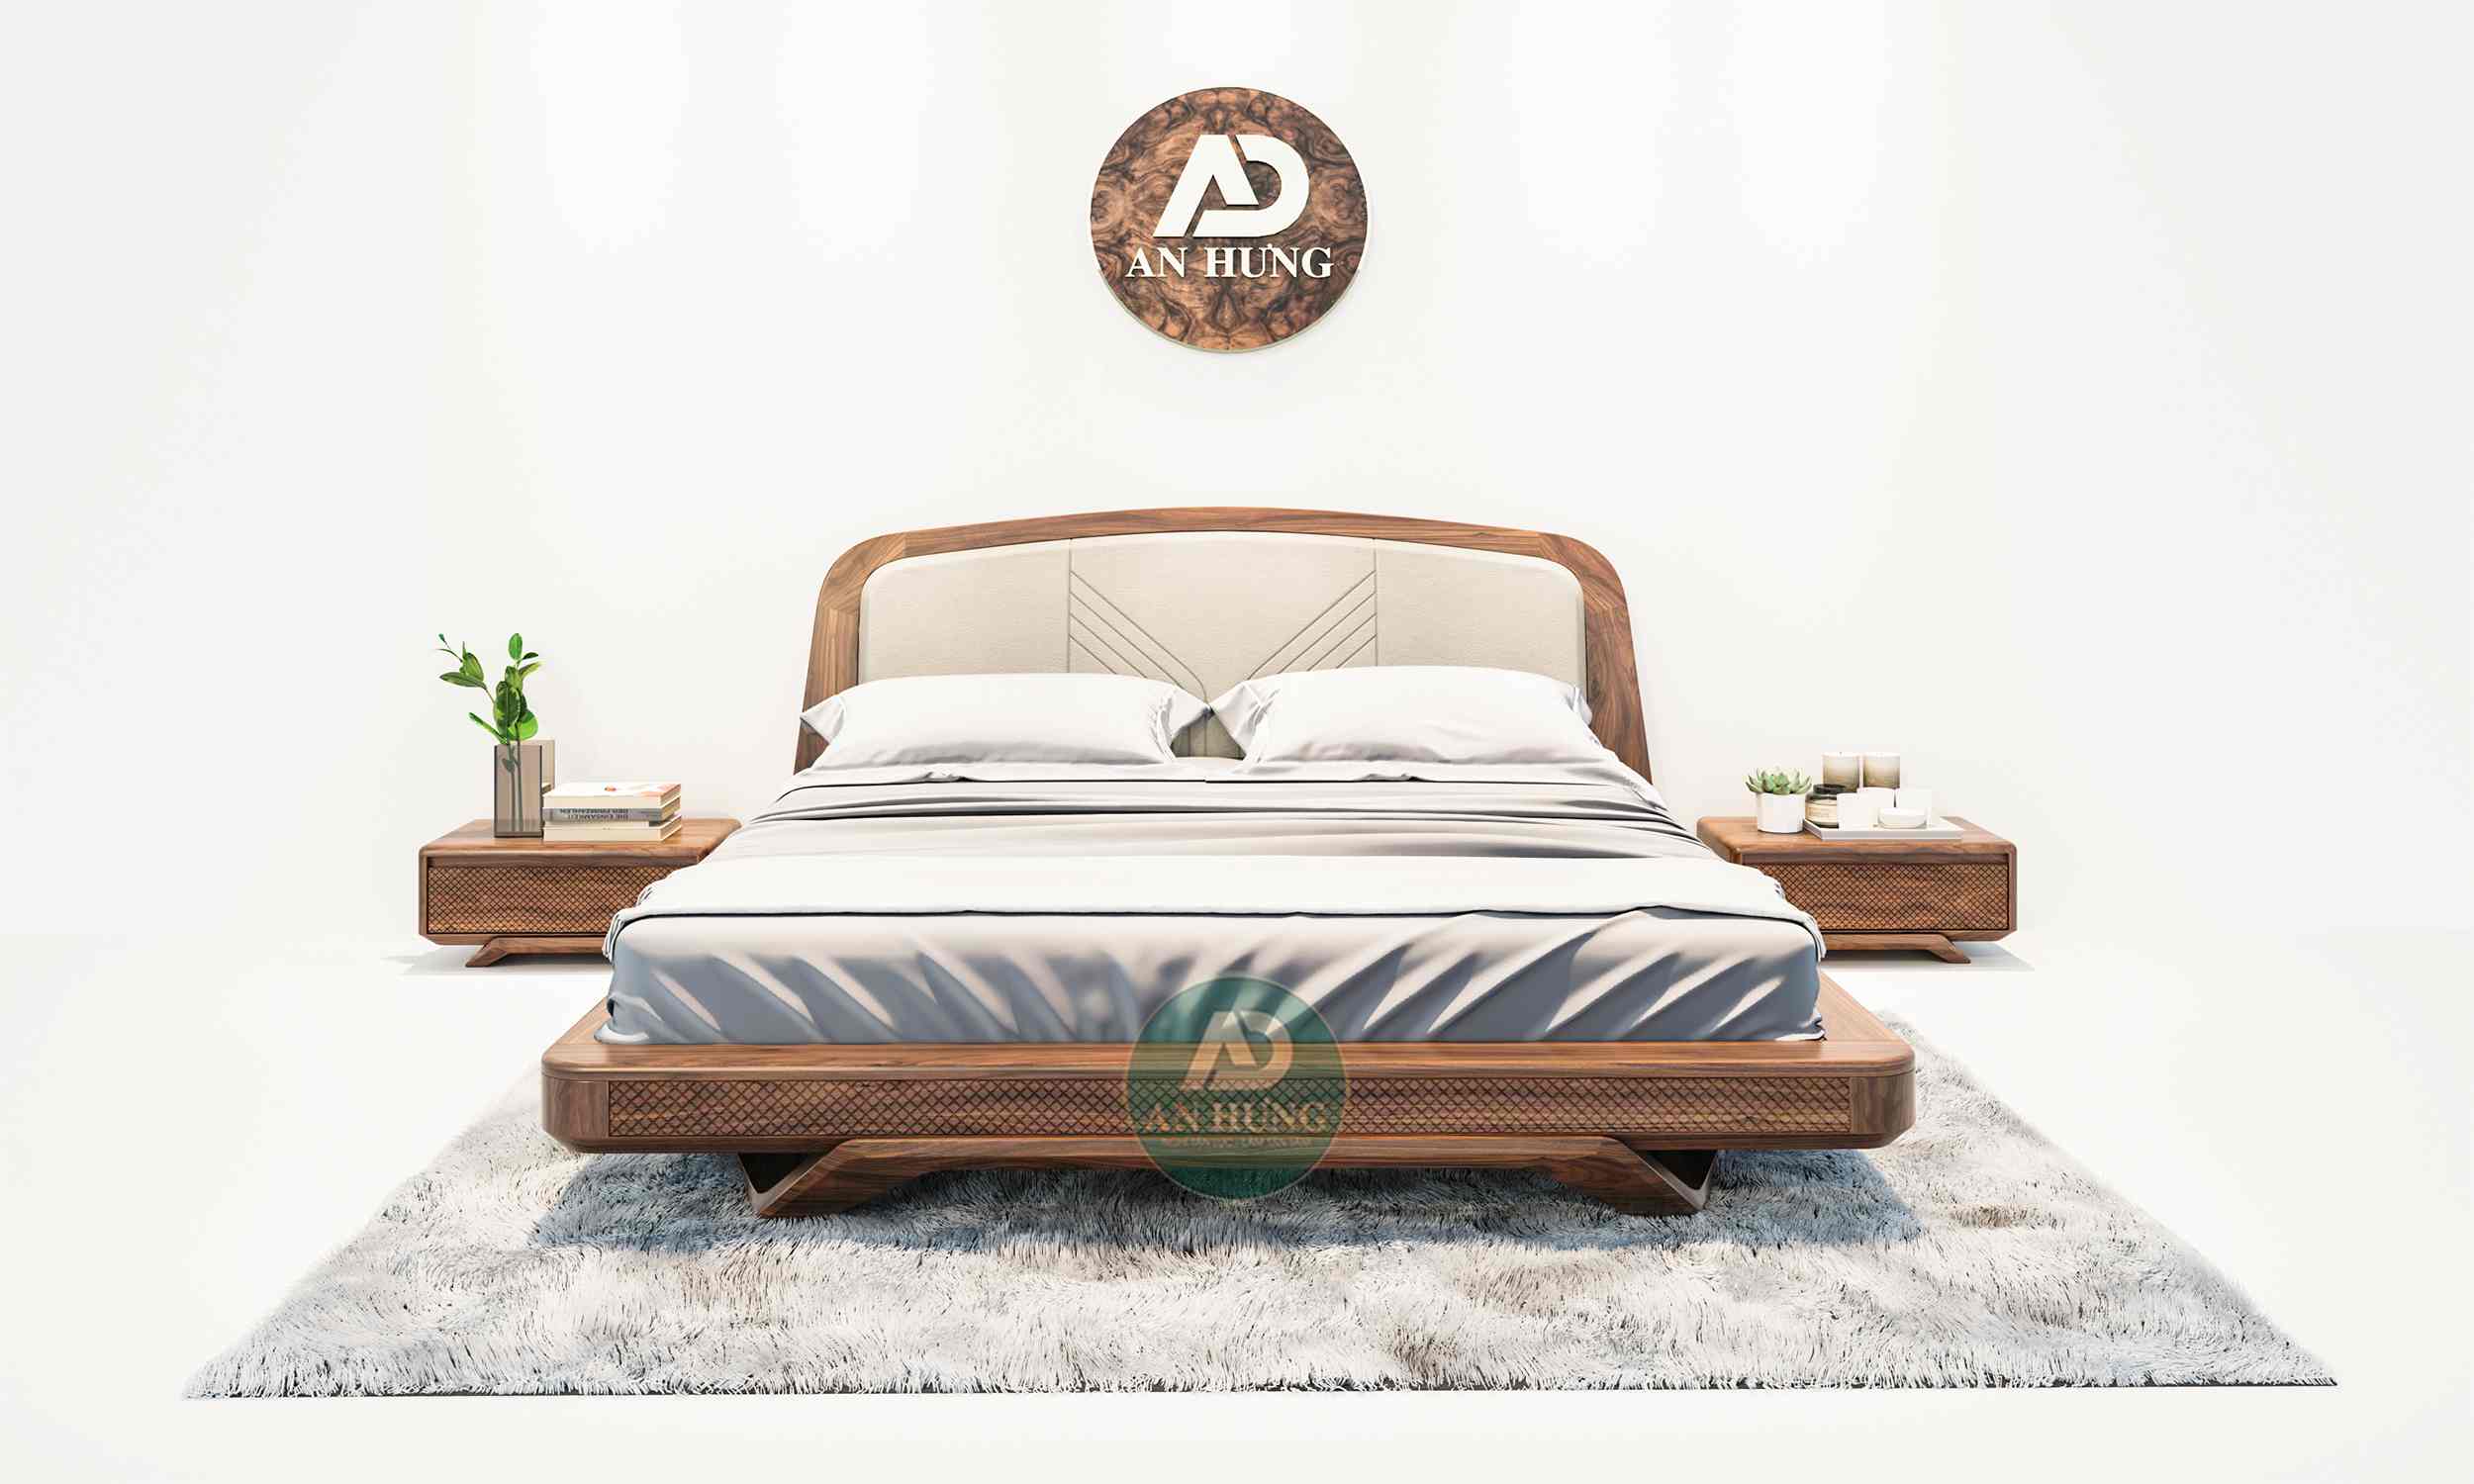 Thiết kế giường gỗ óc chó cao cấp